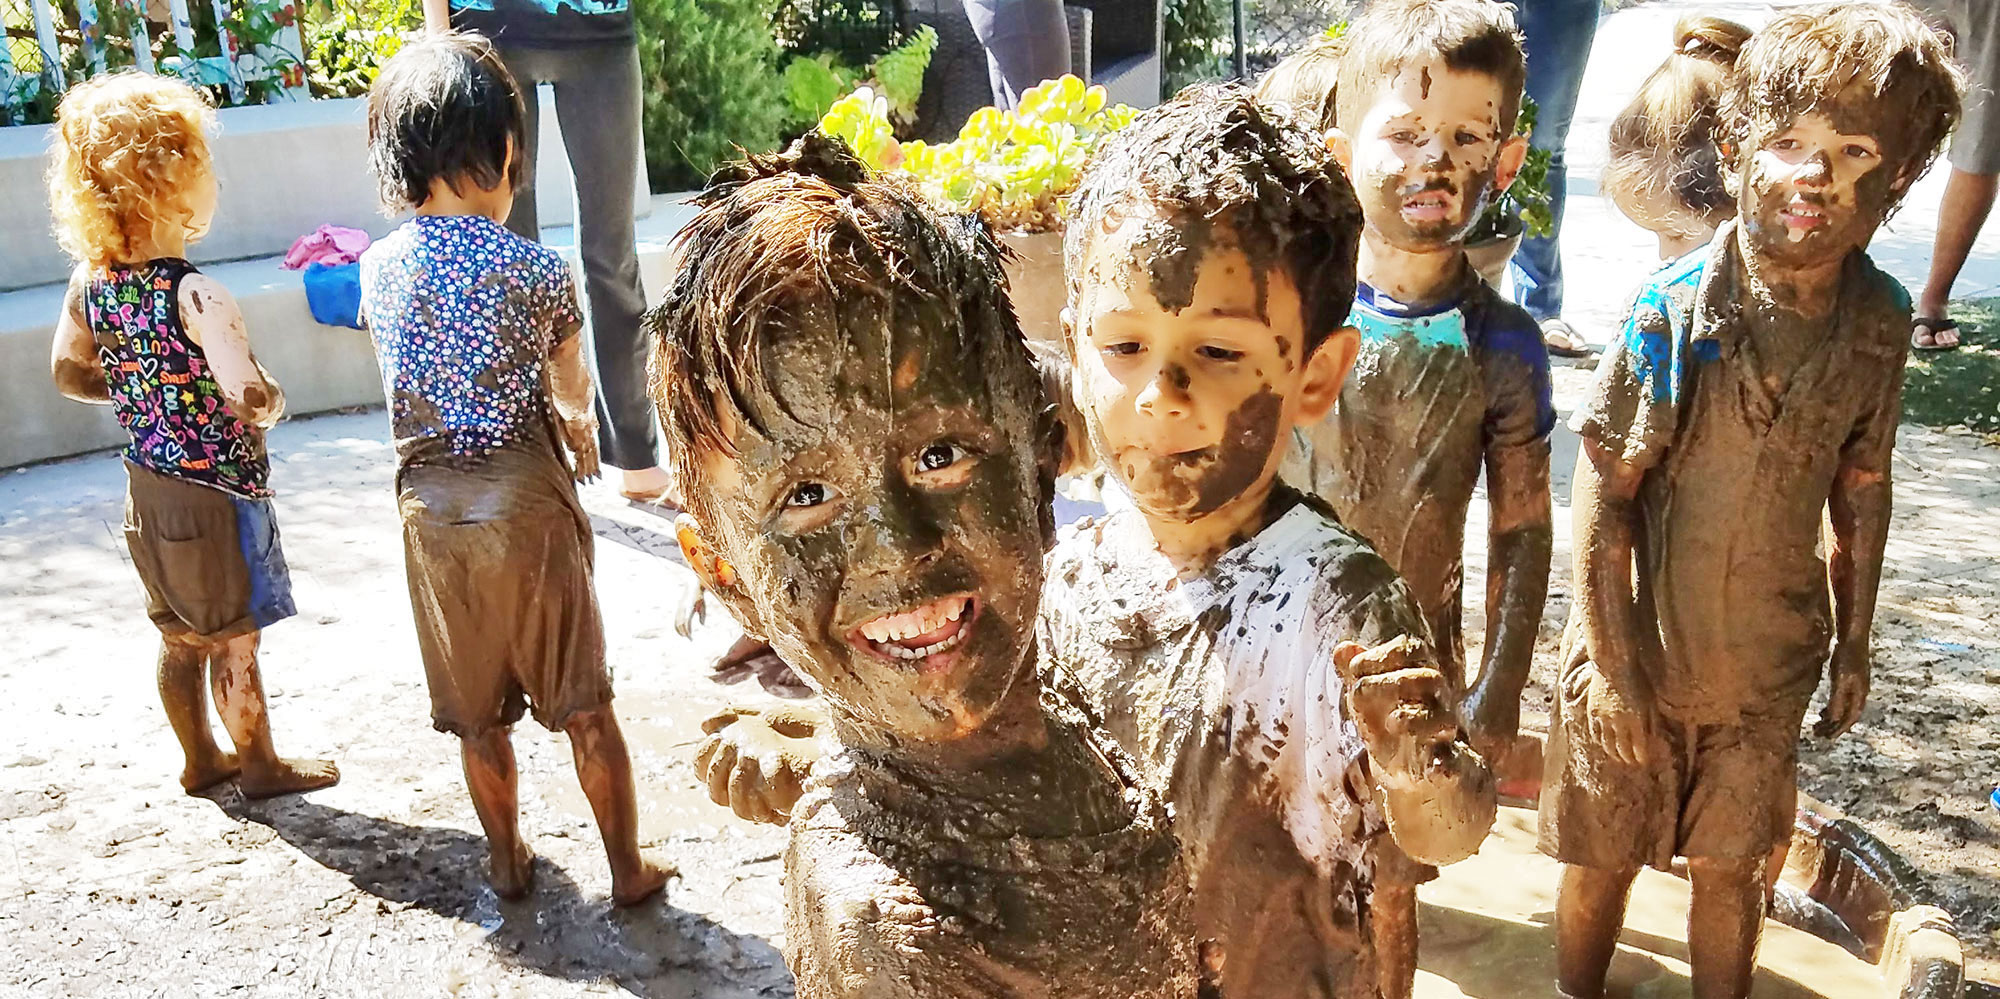 Kids having fun during International Mud Day